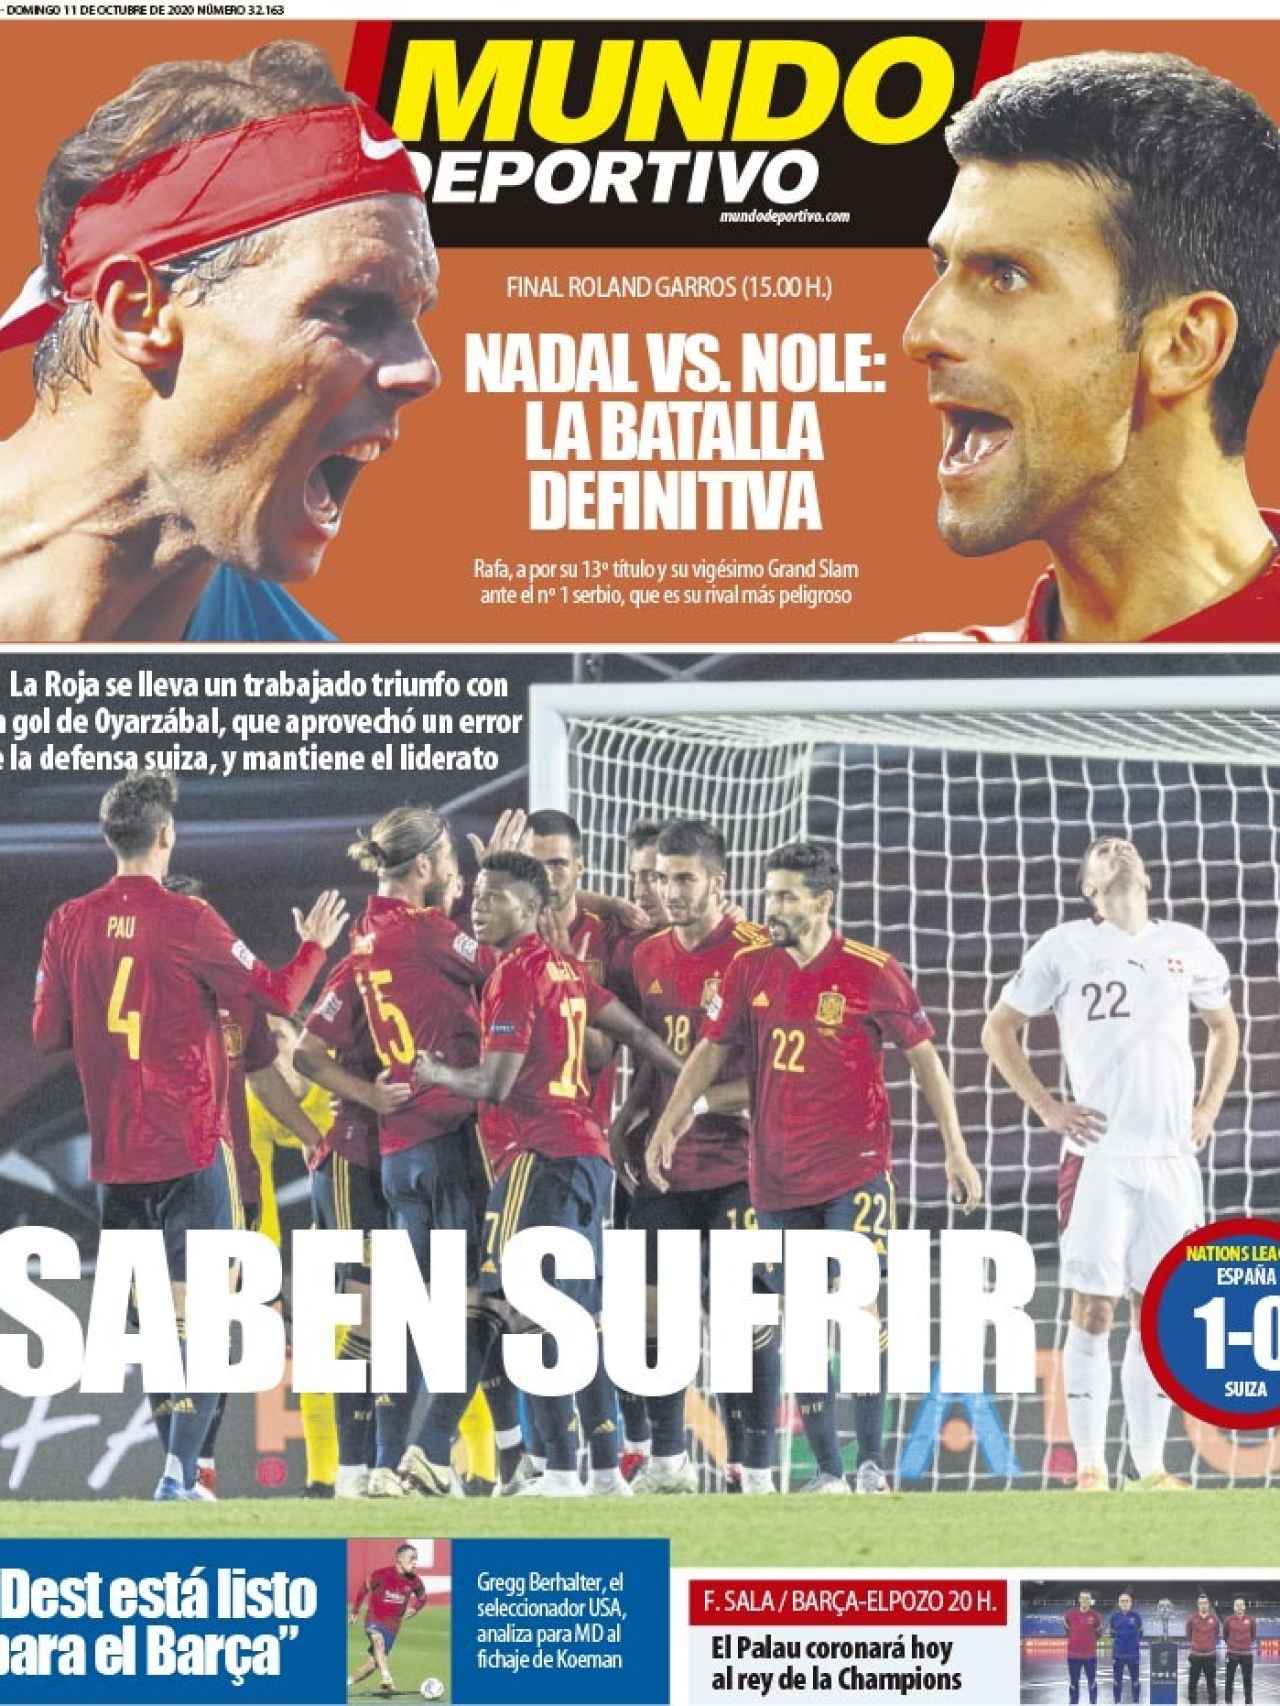 La portada del diario Mundo Deportivo (11/10/2020)